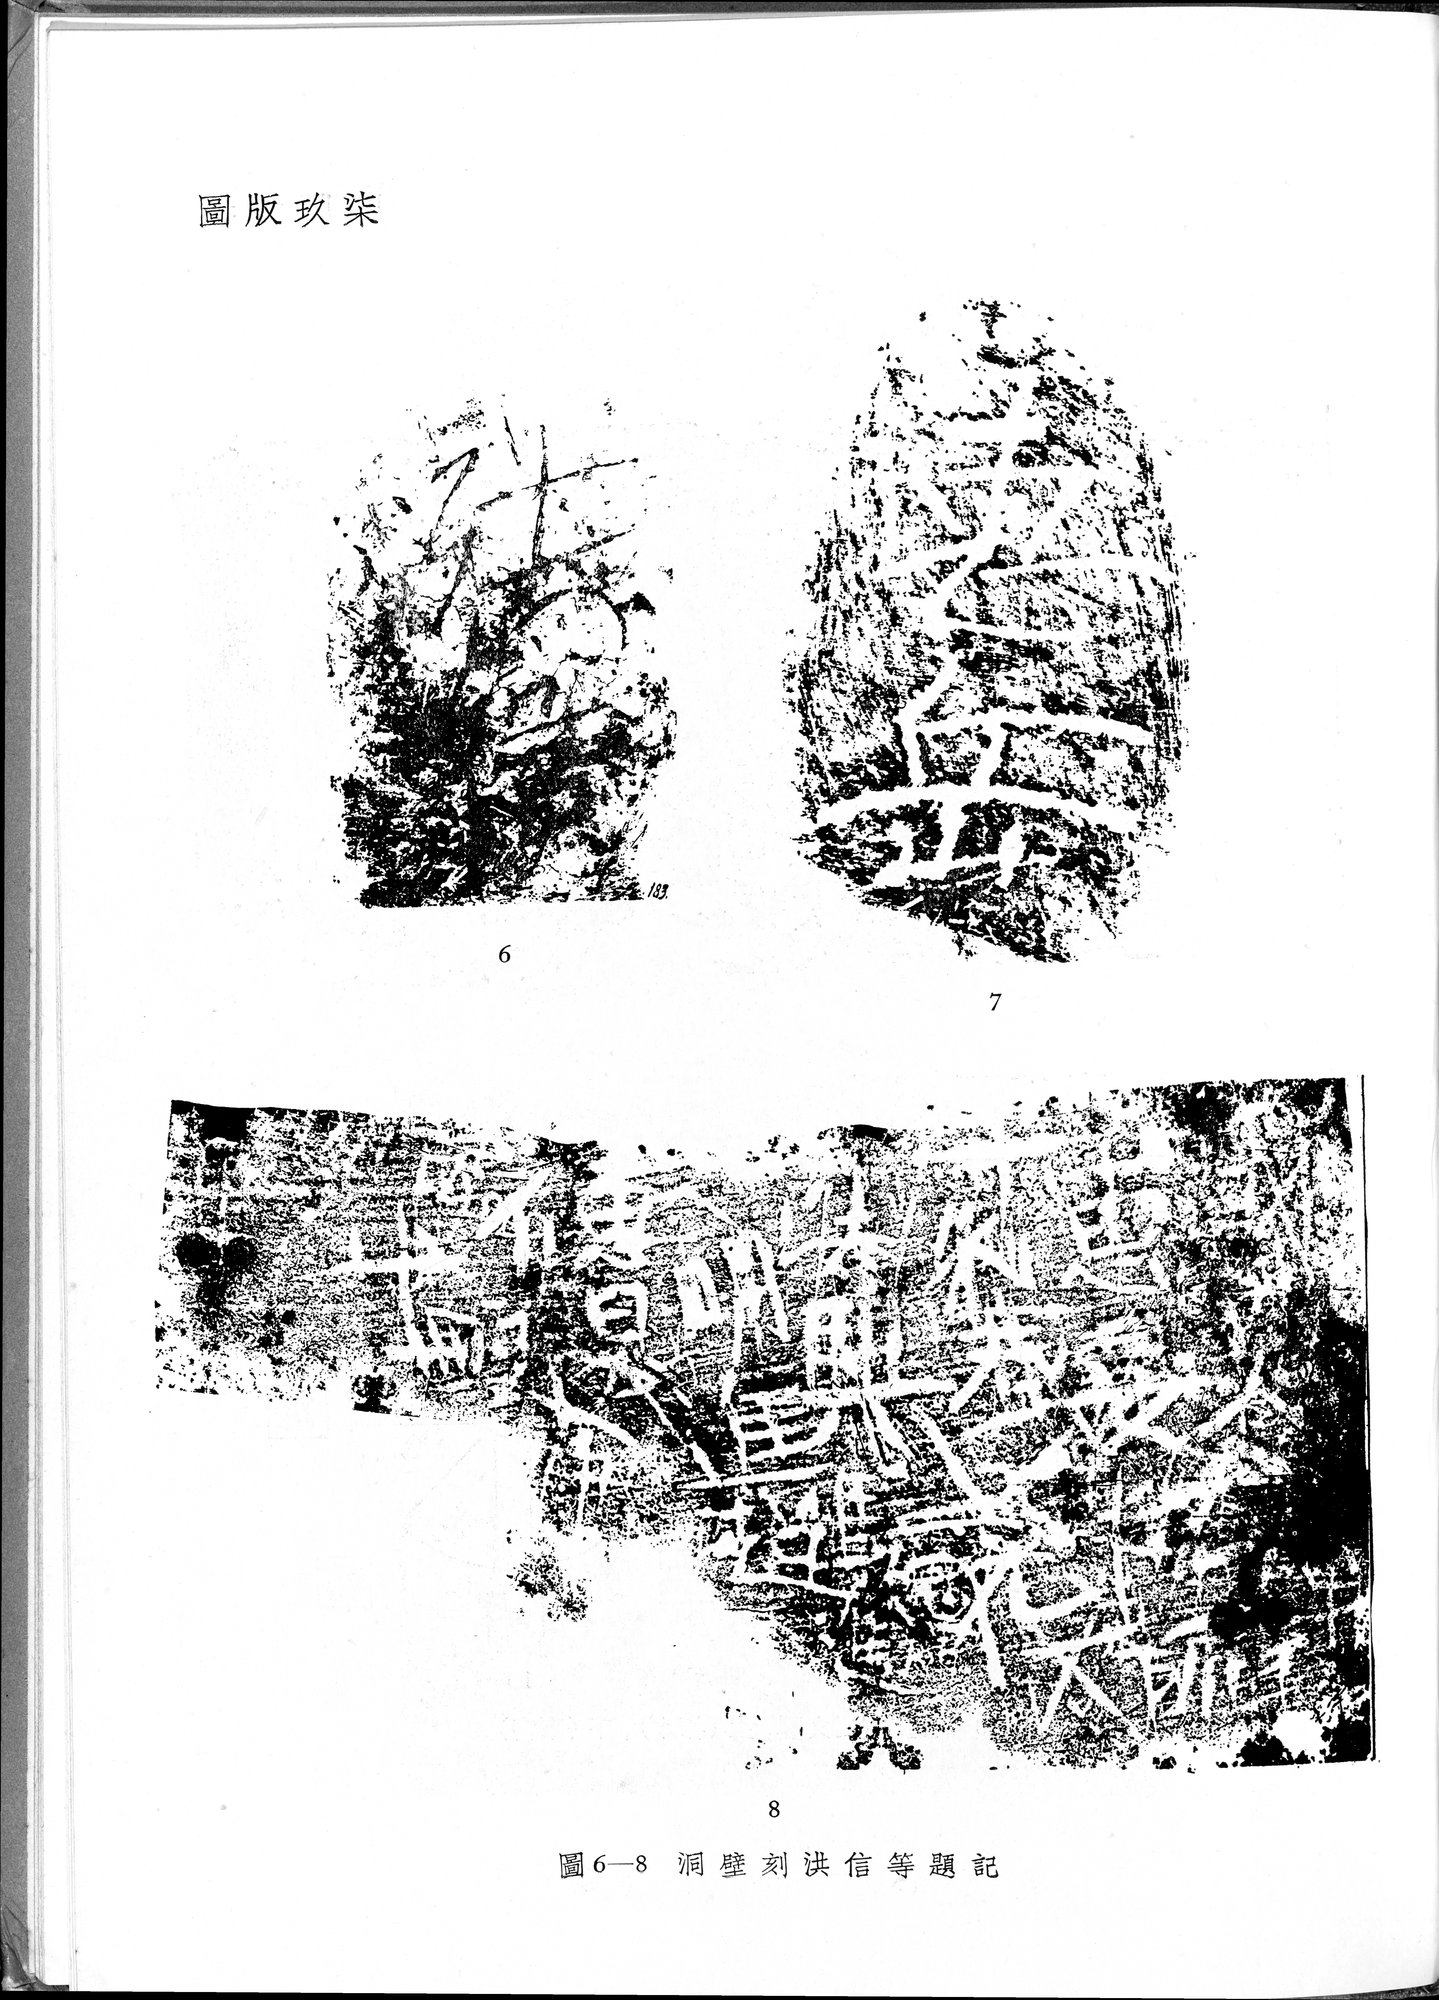 塔里木盆地考古記 : vol.1 / 331 ページ（白黒高解像度画像）